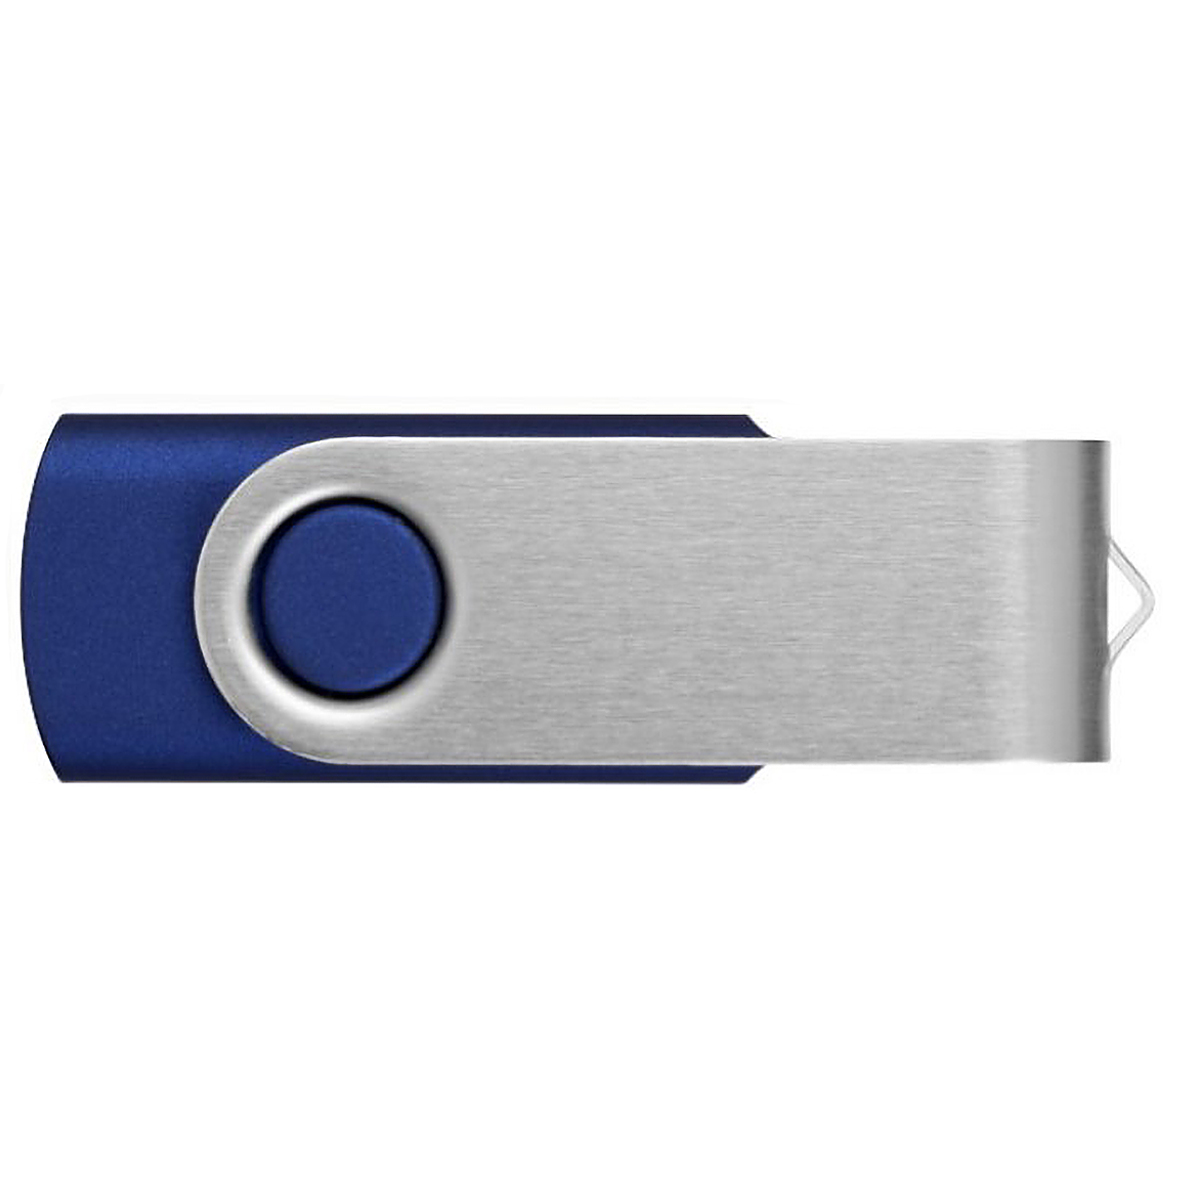 USB-Stick einseitig oder doppelseitig bedruckt